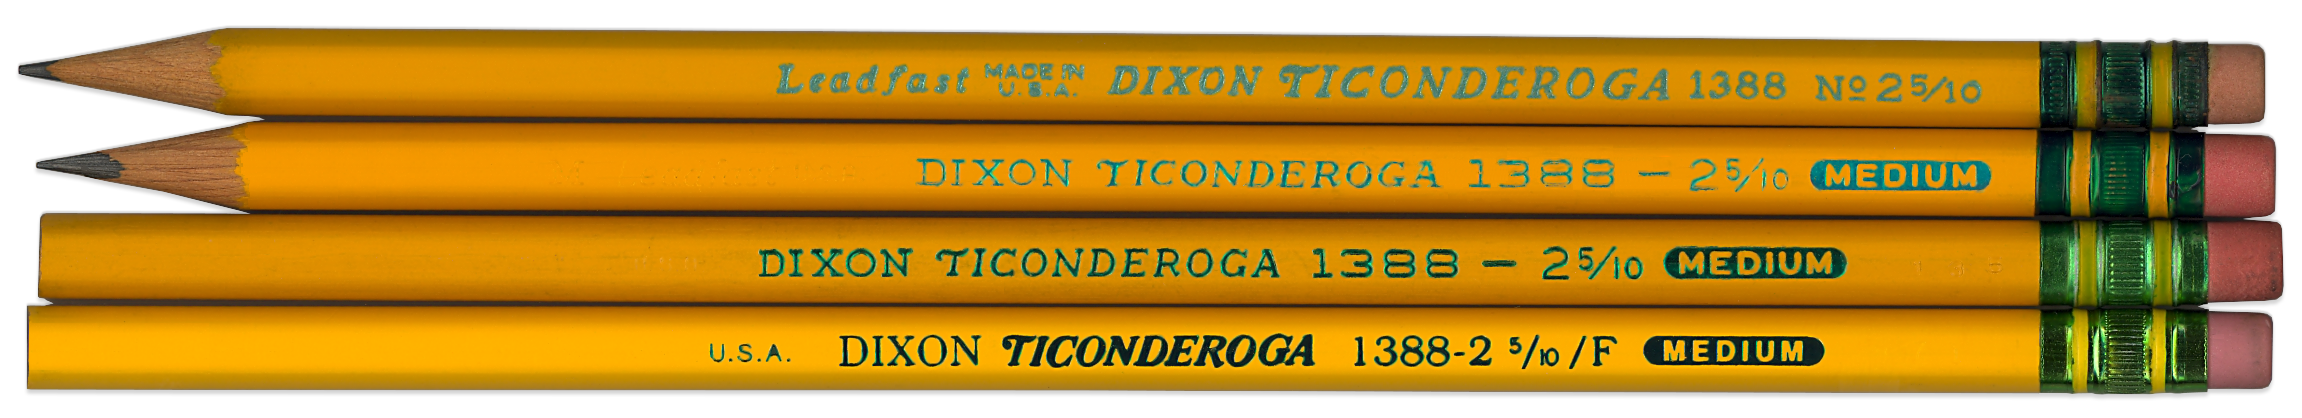 8 DIXON TICONDEROGA PENCILS 2 5/10 MEDIUM NO. 1388 NO BOX